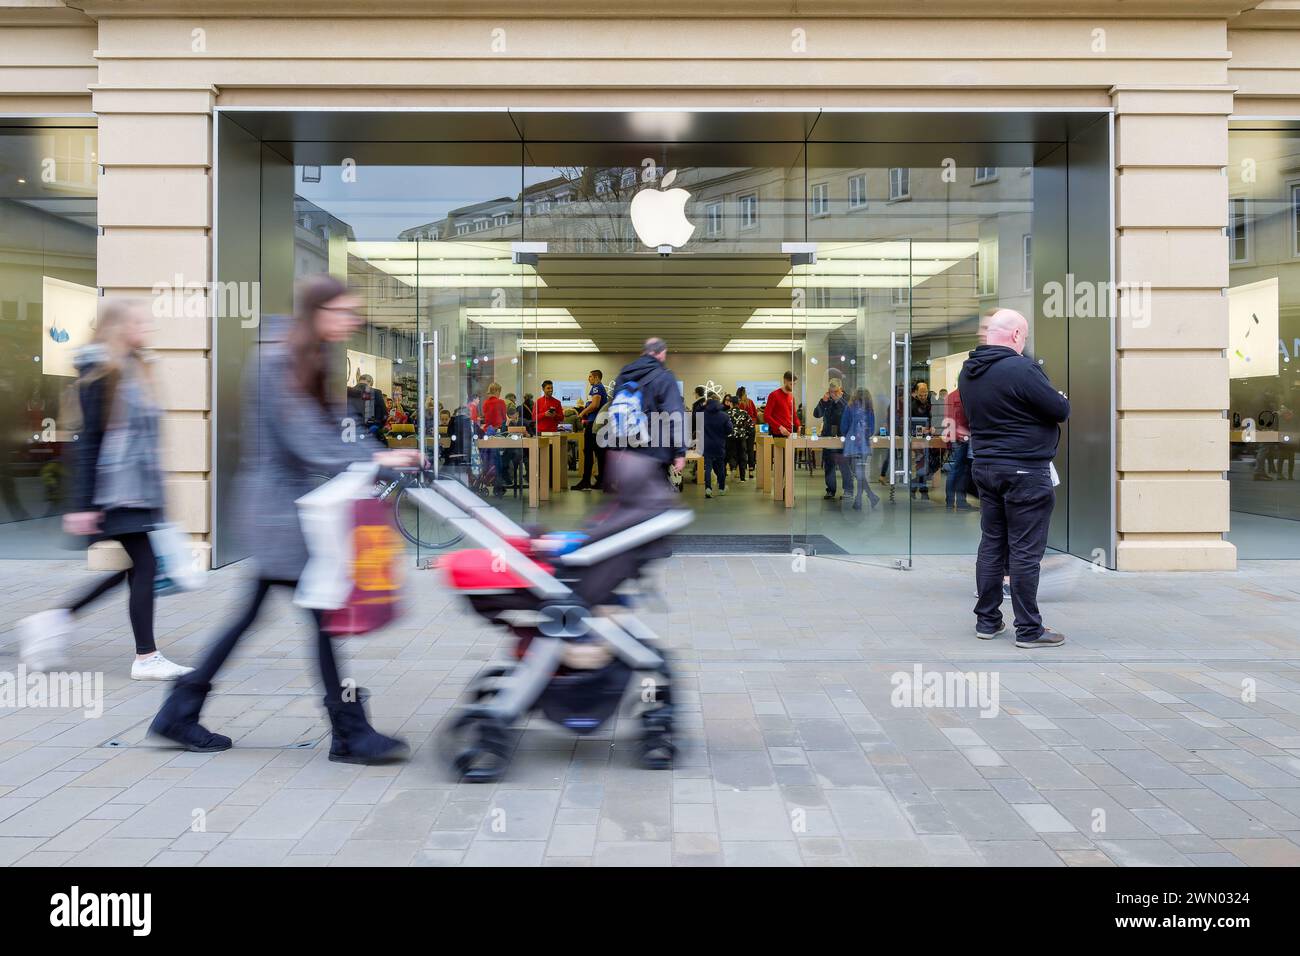 Die Einkäufer werden in Bath England, Großbritannien, durch einen Apple Store/Shop spazieren sehen. Bad 17. Dez. 2016 Stockfoto